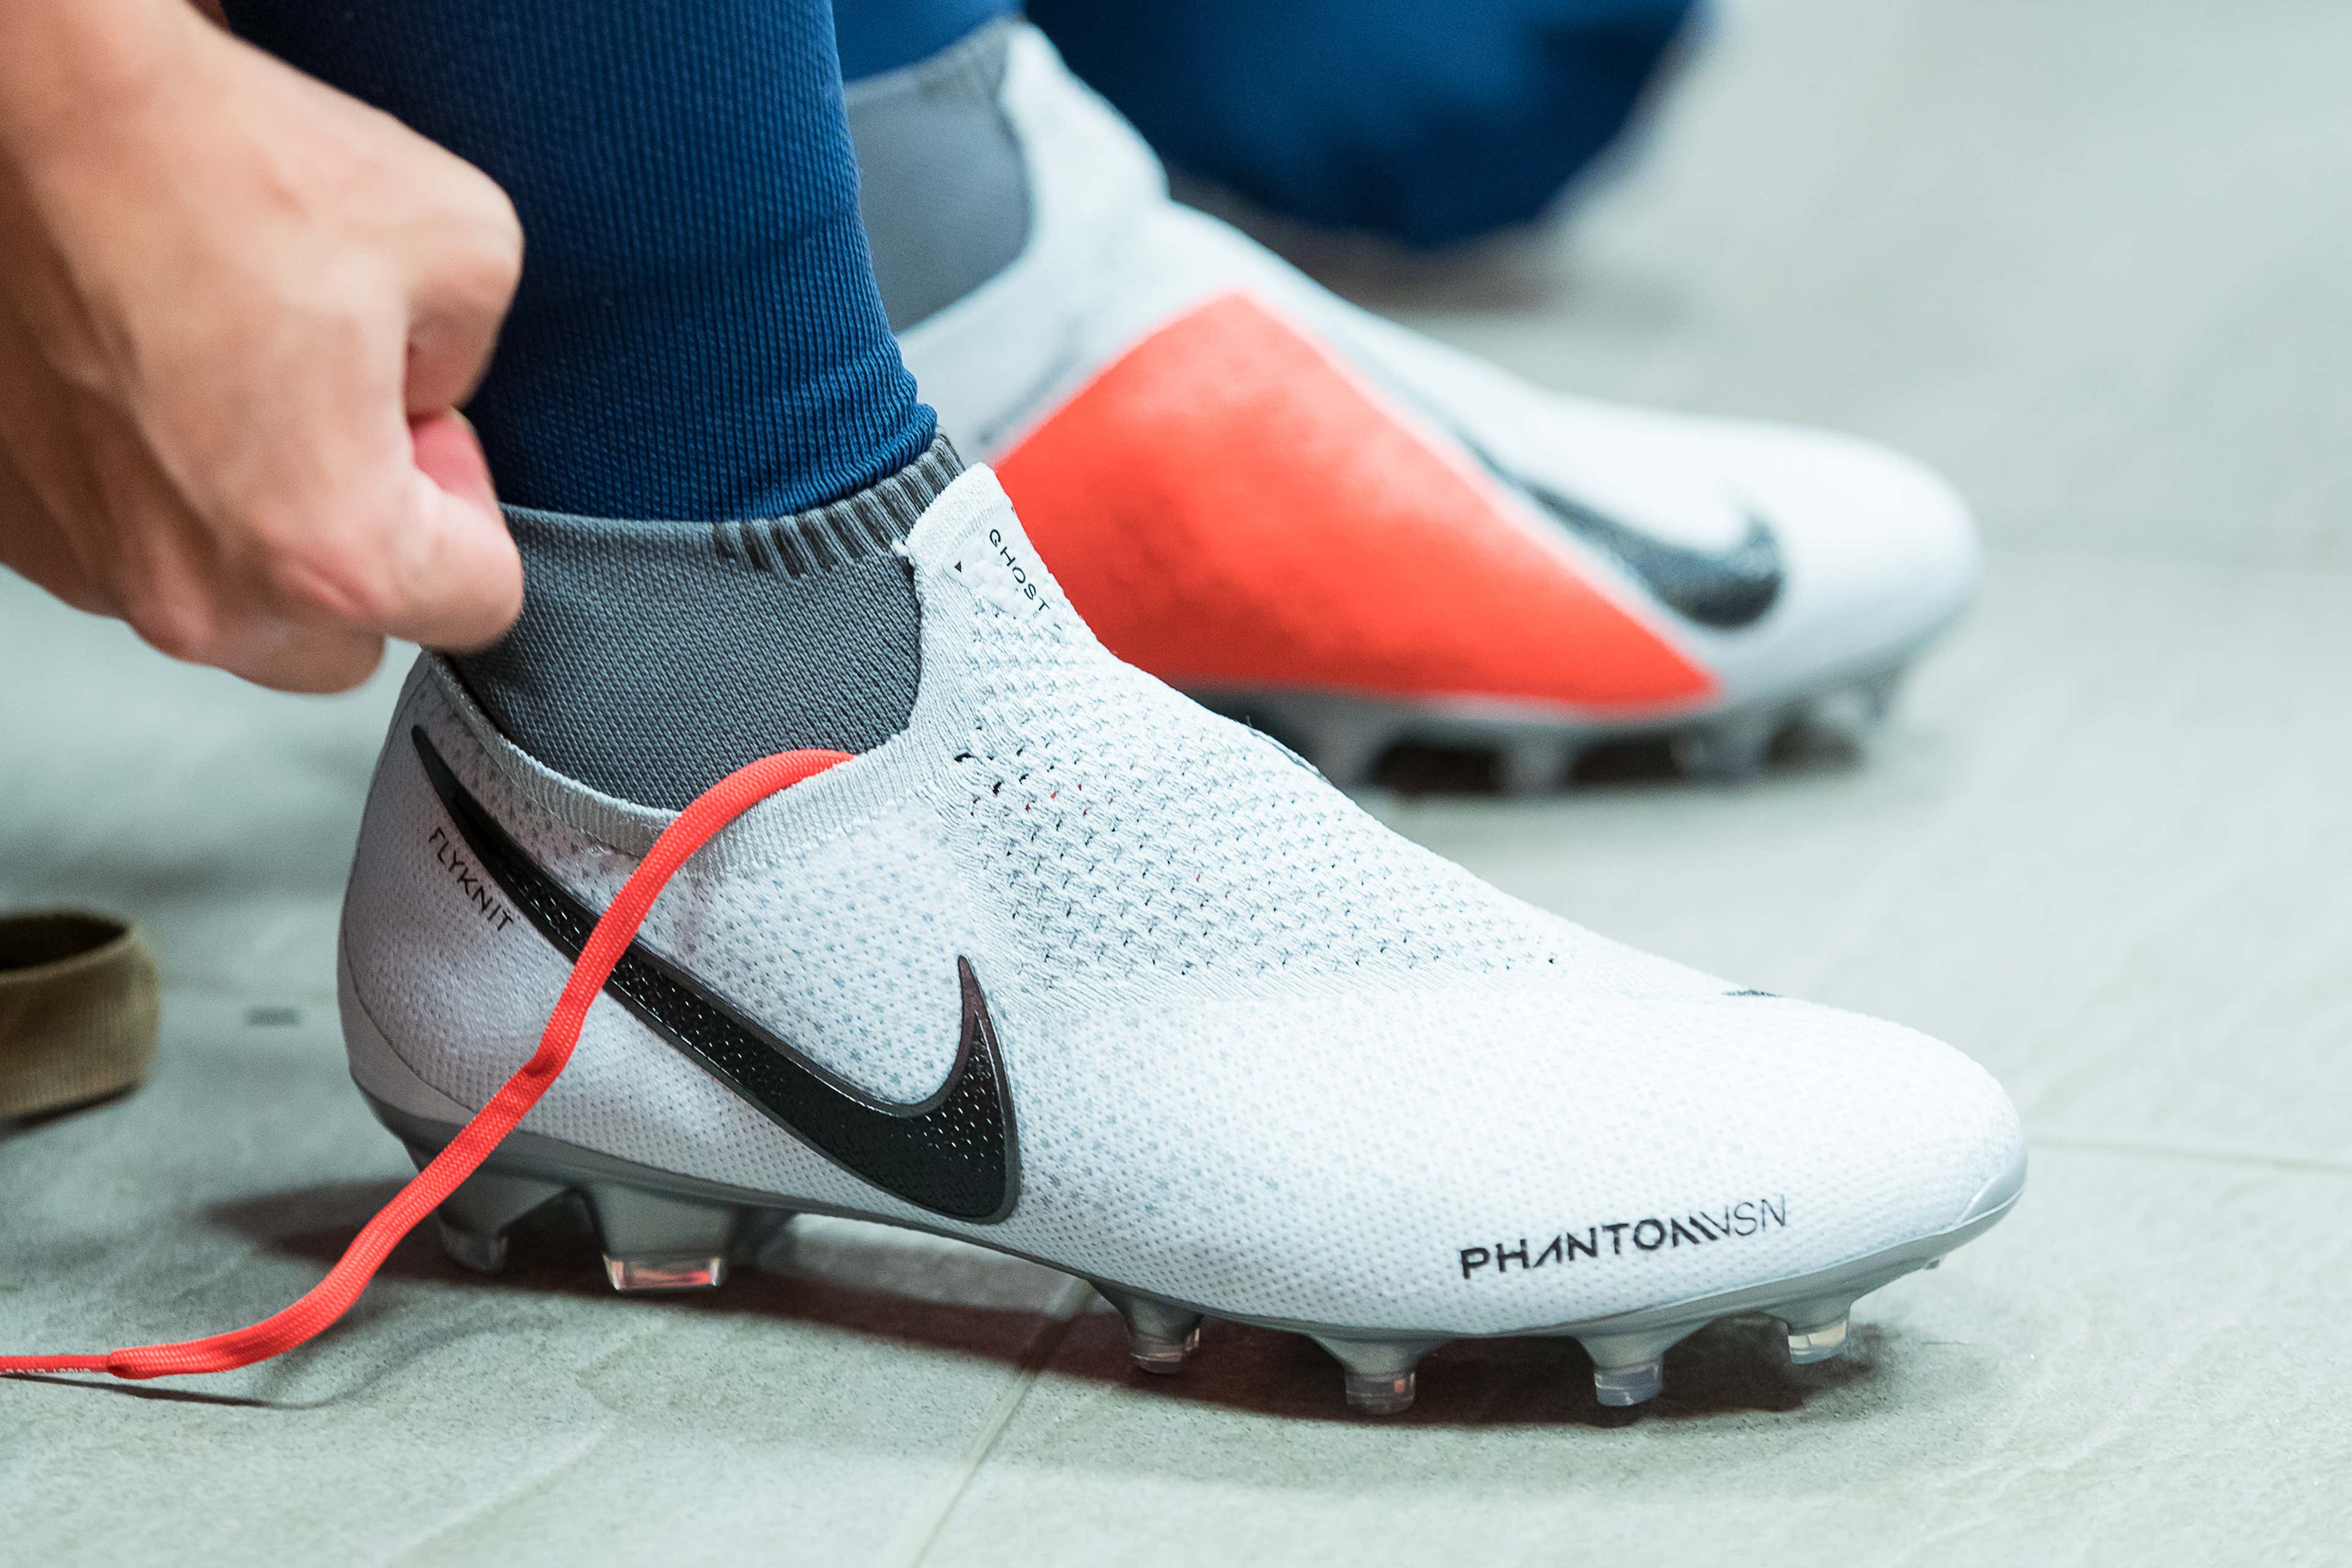 Nike's PhantomVSN; a dream for Paris playmaker Marco Verratti | Goal.com